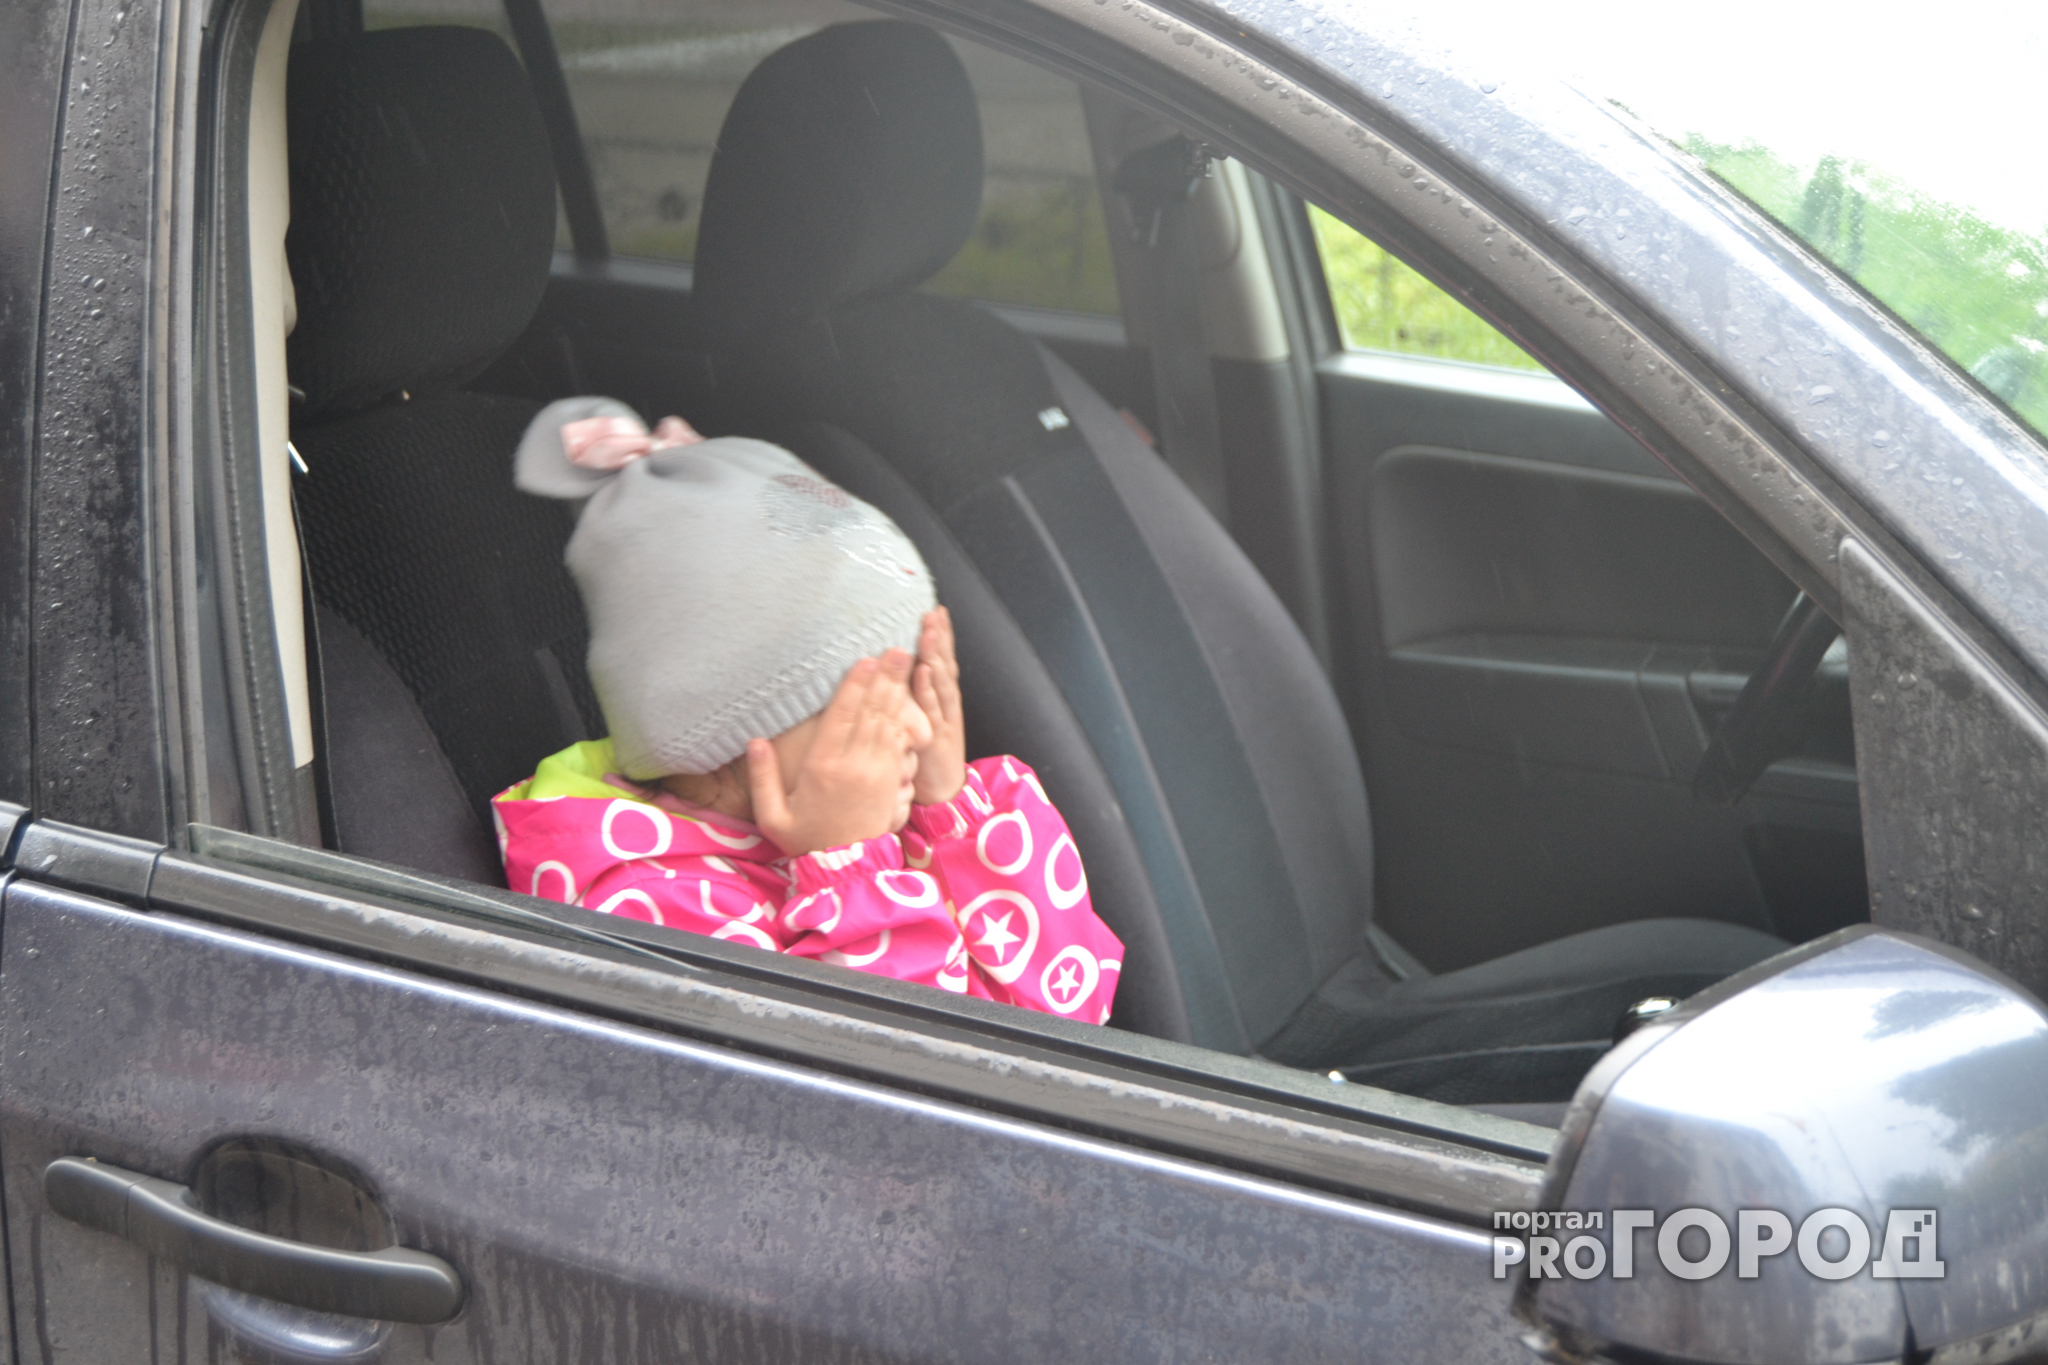 Родители девочки, оставленной в машине в Йошкар-Оле, могут отделаться штрафом